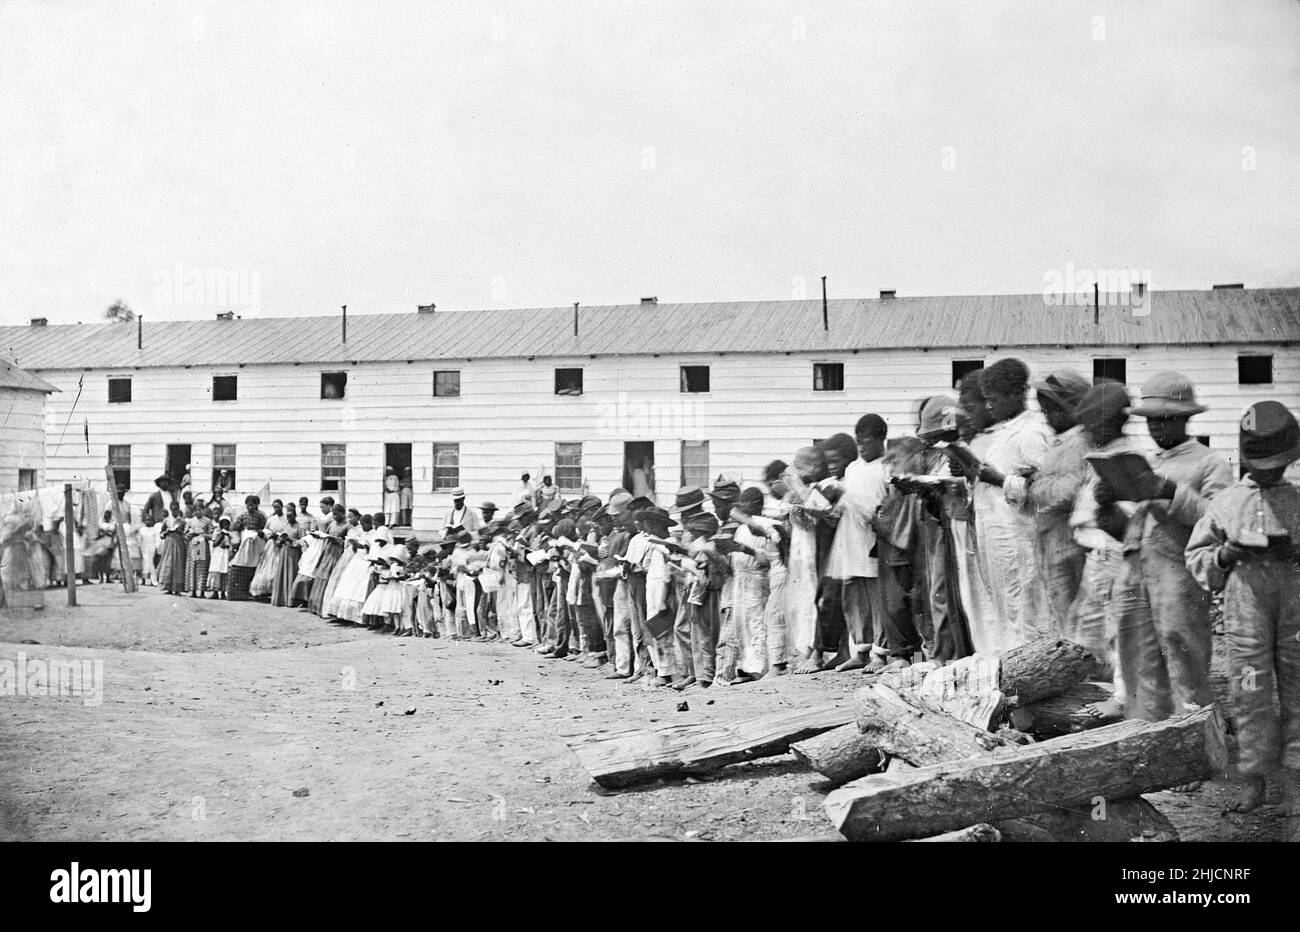 Scuola di contrabbando, era americana della guerra civile, circa 1861-65. Foto di Mathew Brady. Contraband era un termine comunemente usato nelle forze militari statunitensi durante la guerra civile per descrivere un nuovo status per alcuni schiavi fuggiti o per coloro che si sono affiliati con le forze dell'Unione. Foto Stock